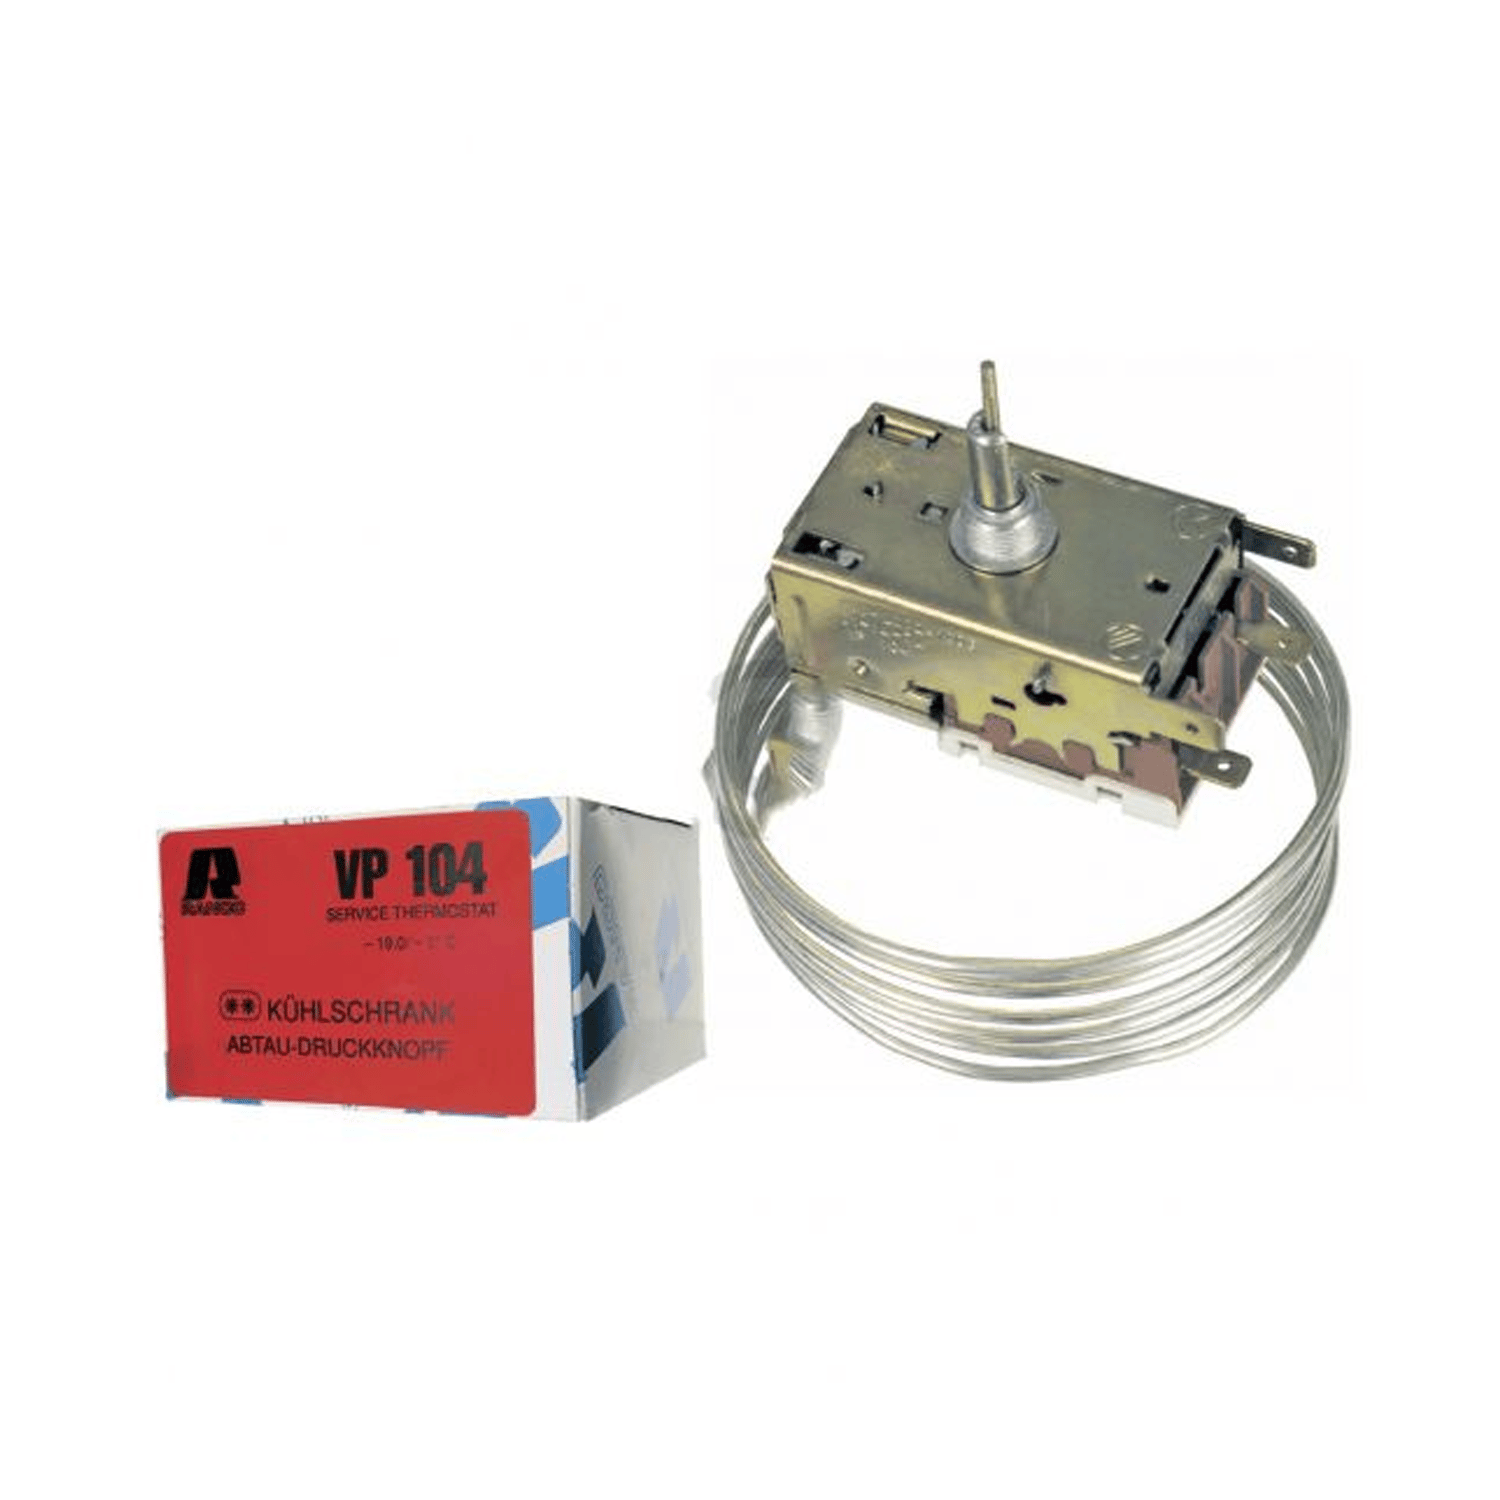 Thermostat de service Ranco VP104 K60-L2024 pour réfrigérateur ROBERTSHAW min -9 ° C, max -19 ° C, valeur de commutation -11 ° C, L 1600 mm, AMP 6,3mm